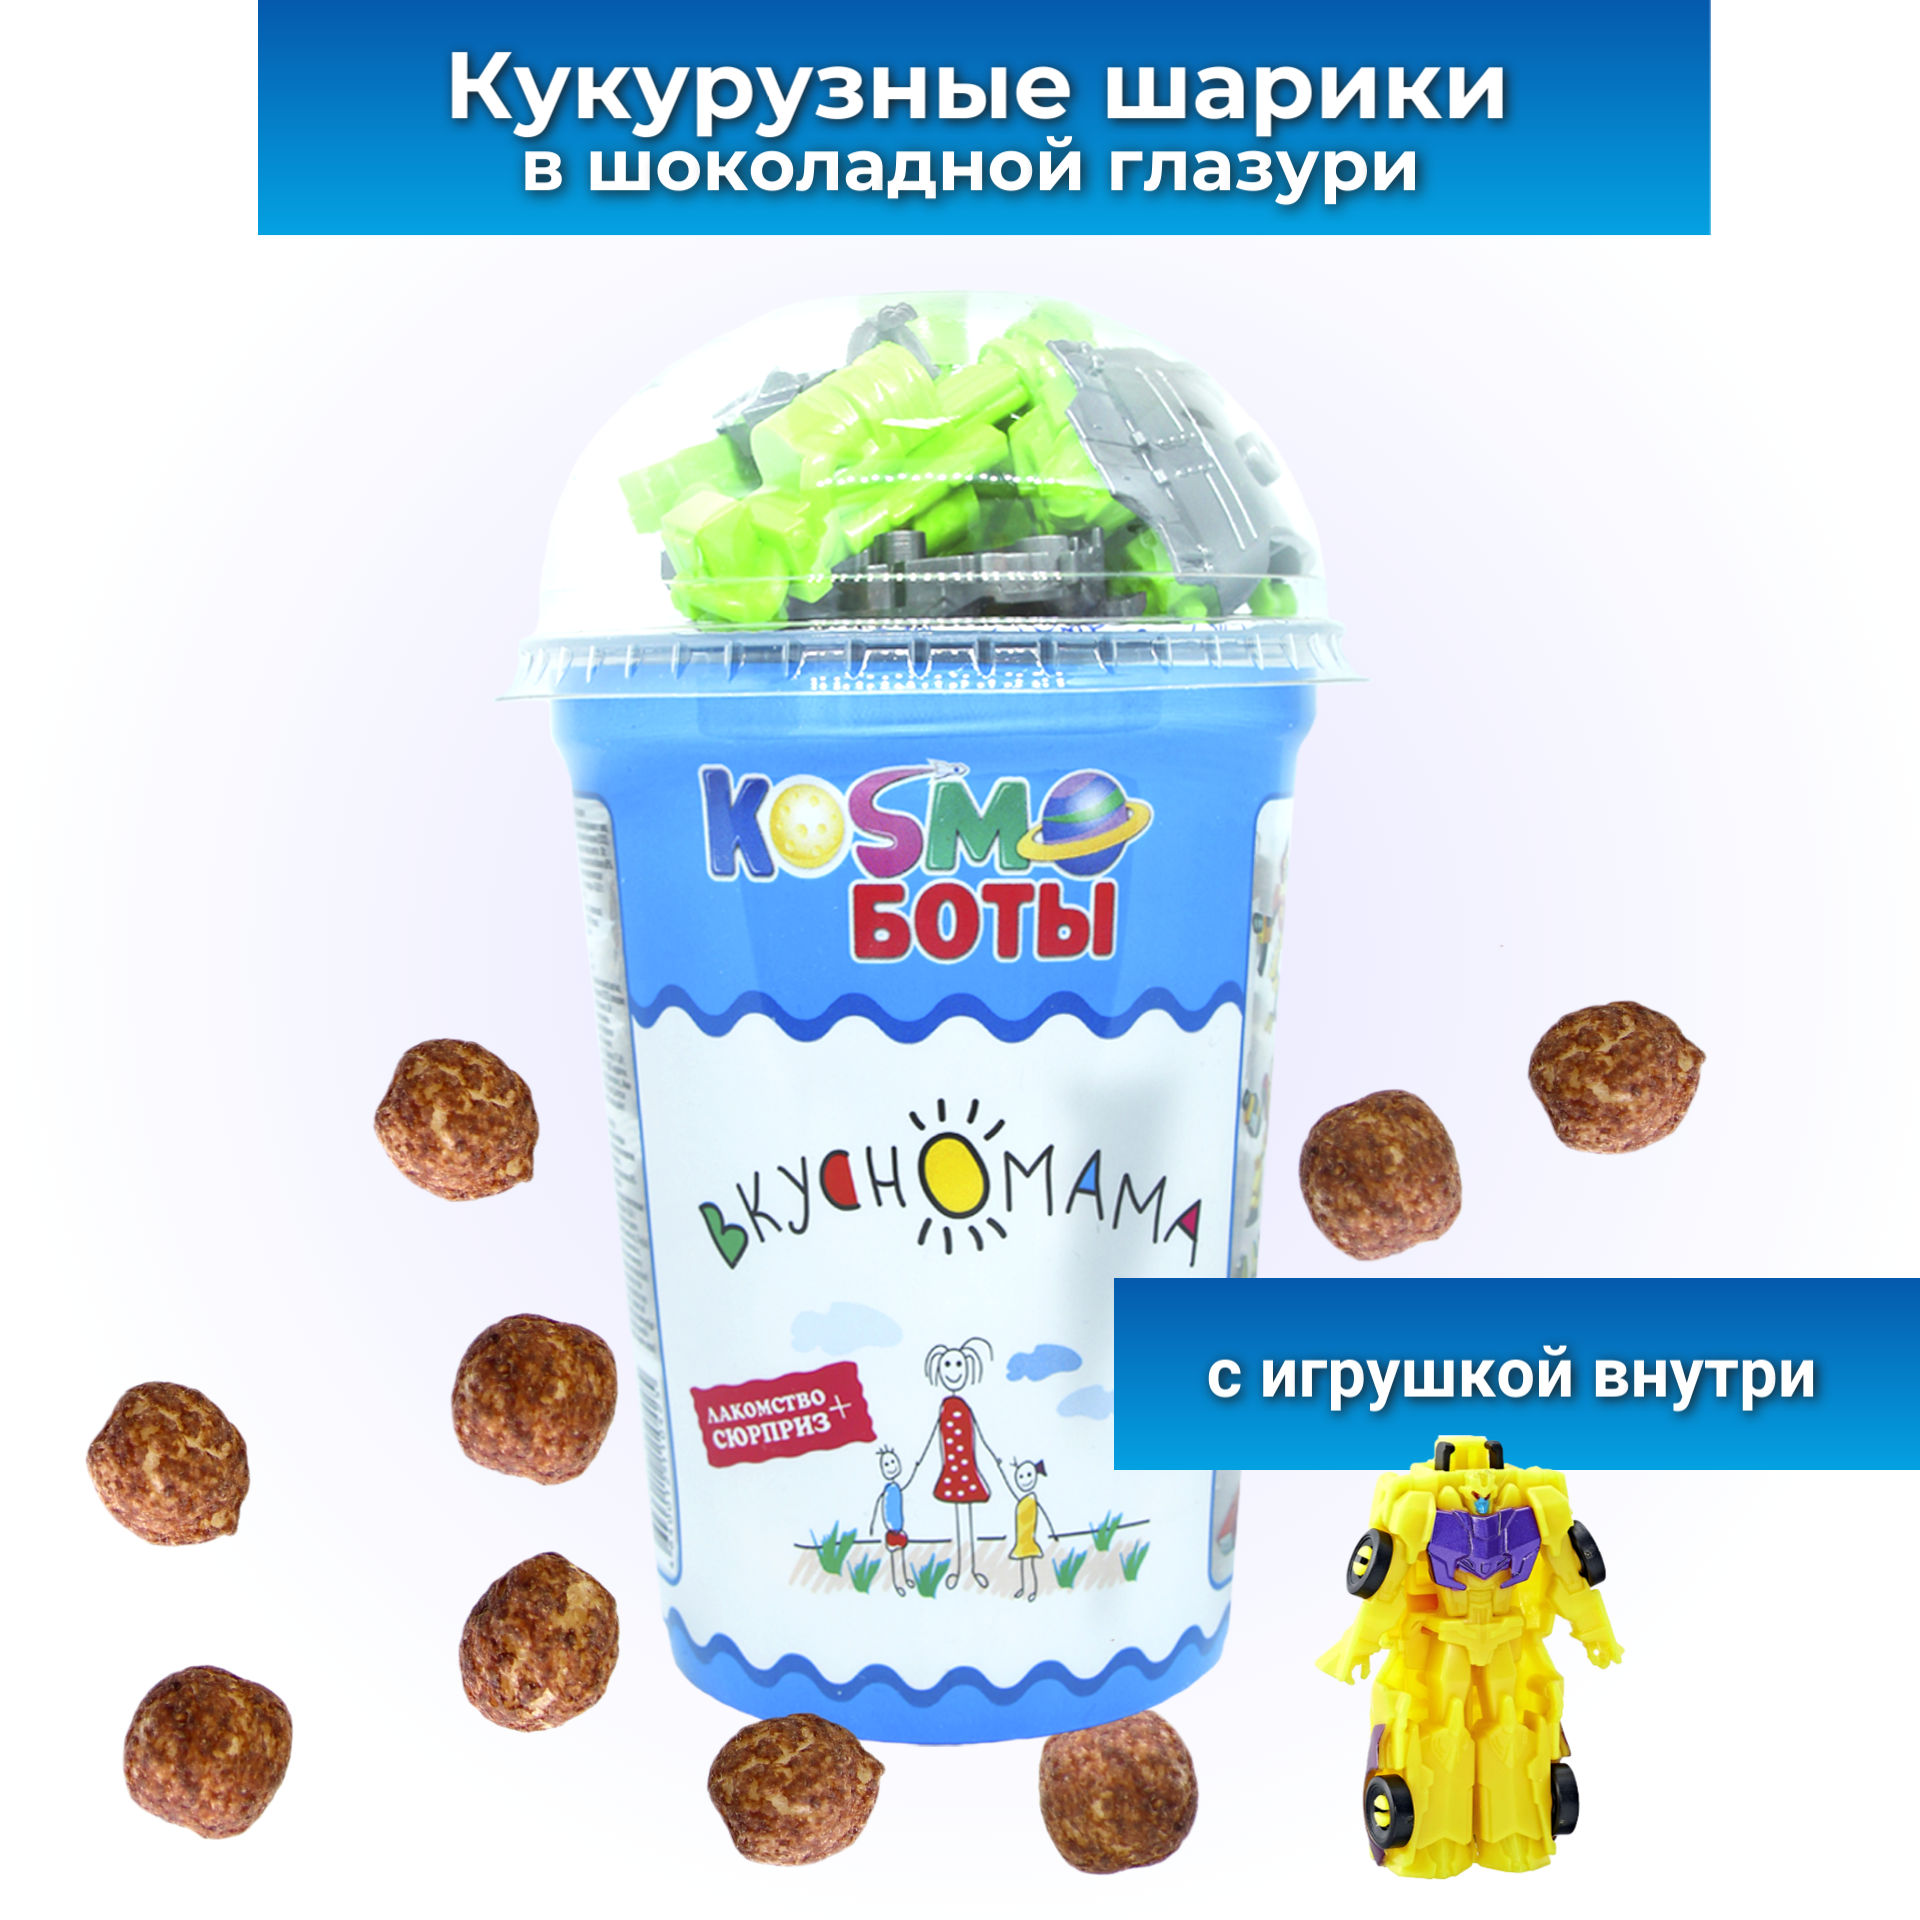 Кукурузные шарики в темной глазури c игрушкой для мальчика Космоботы от Вкусномама 30 г